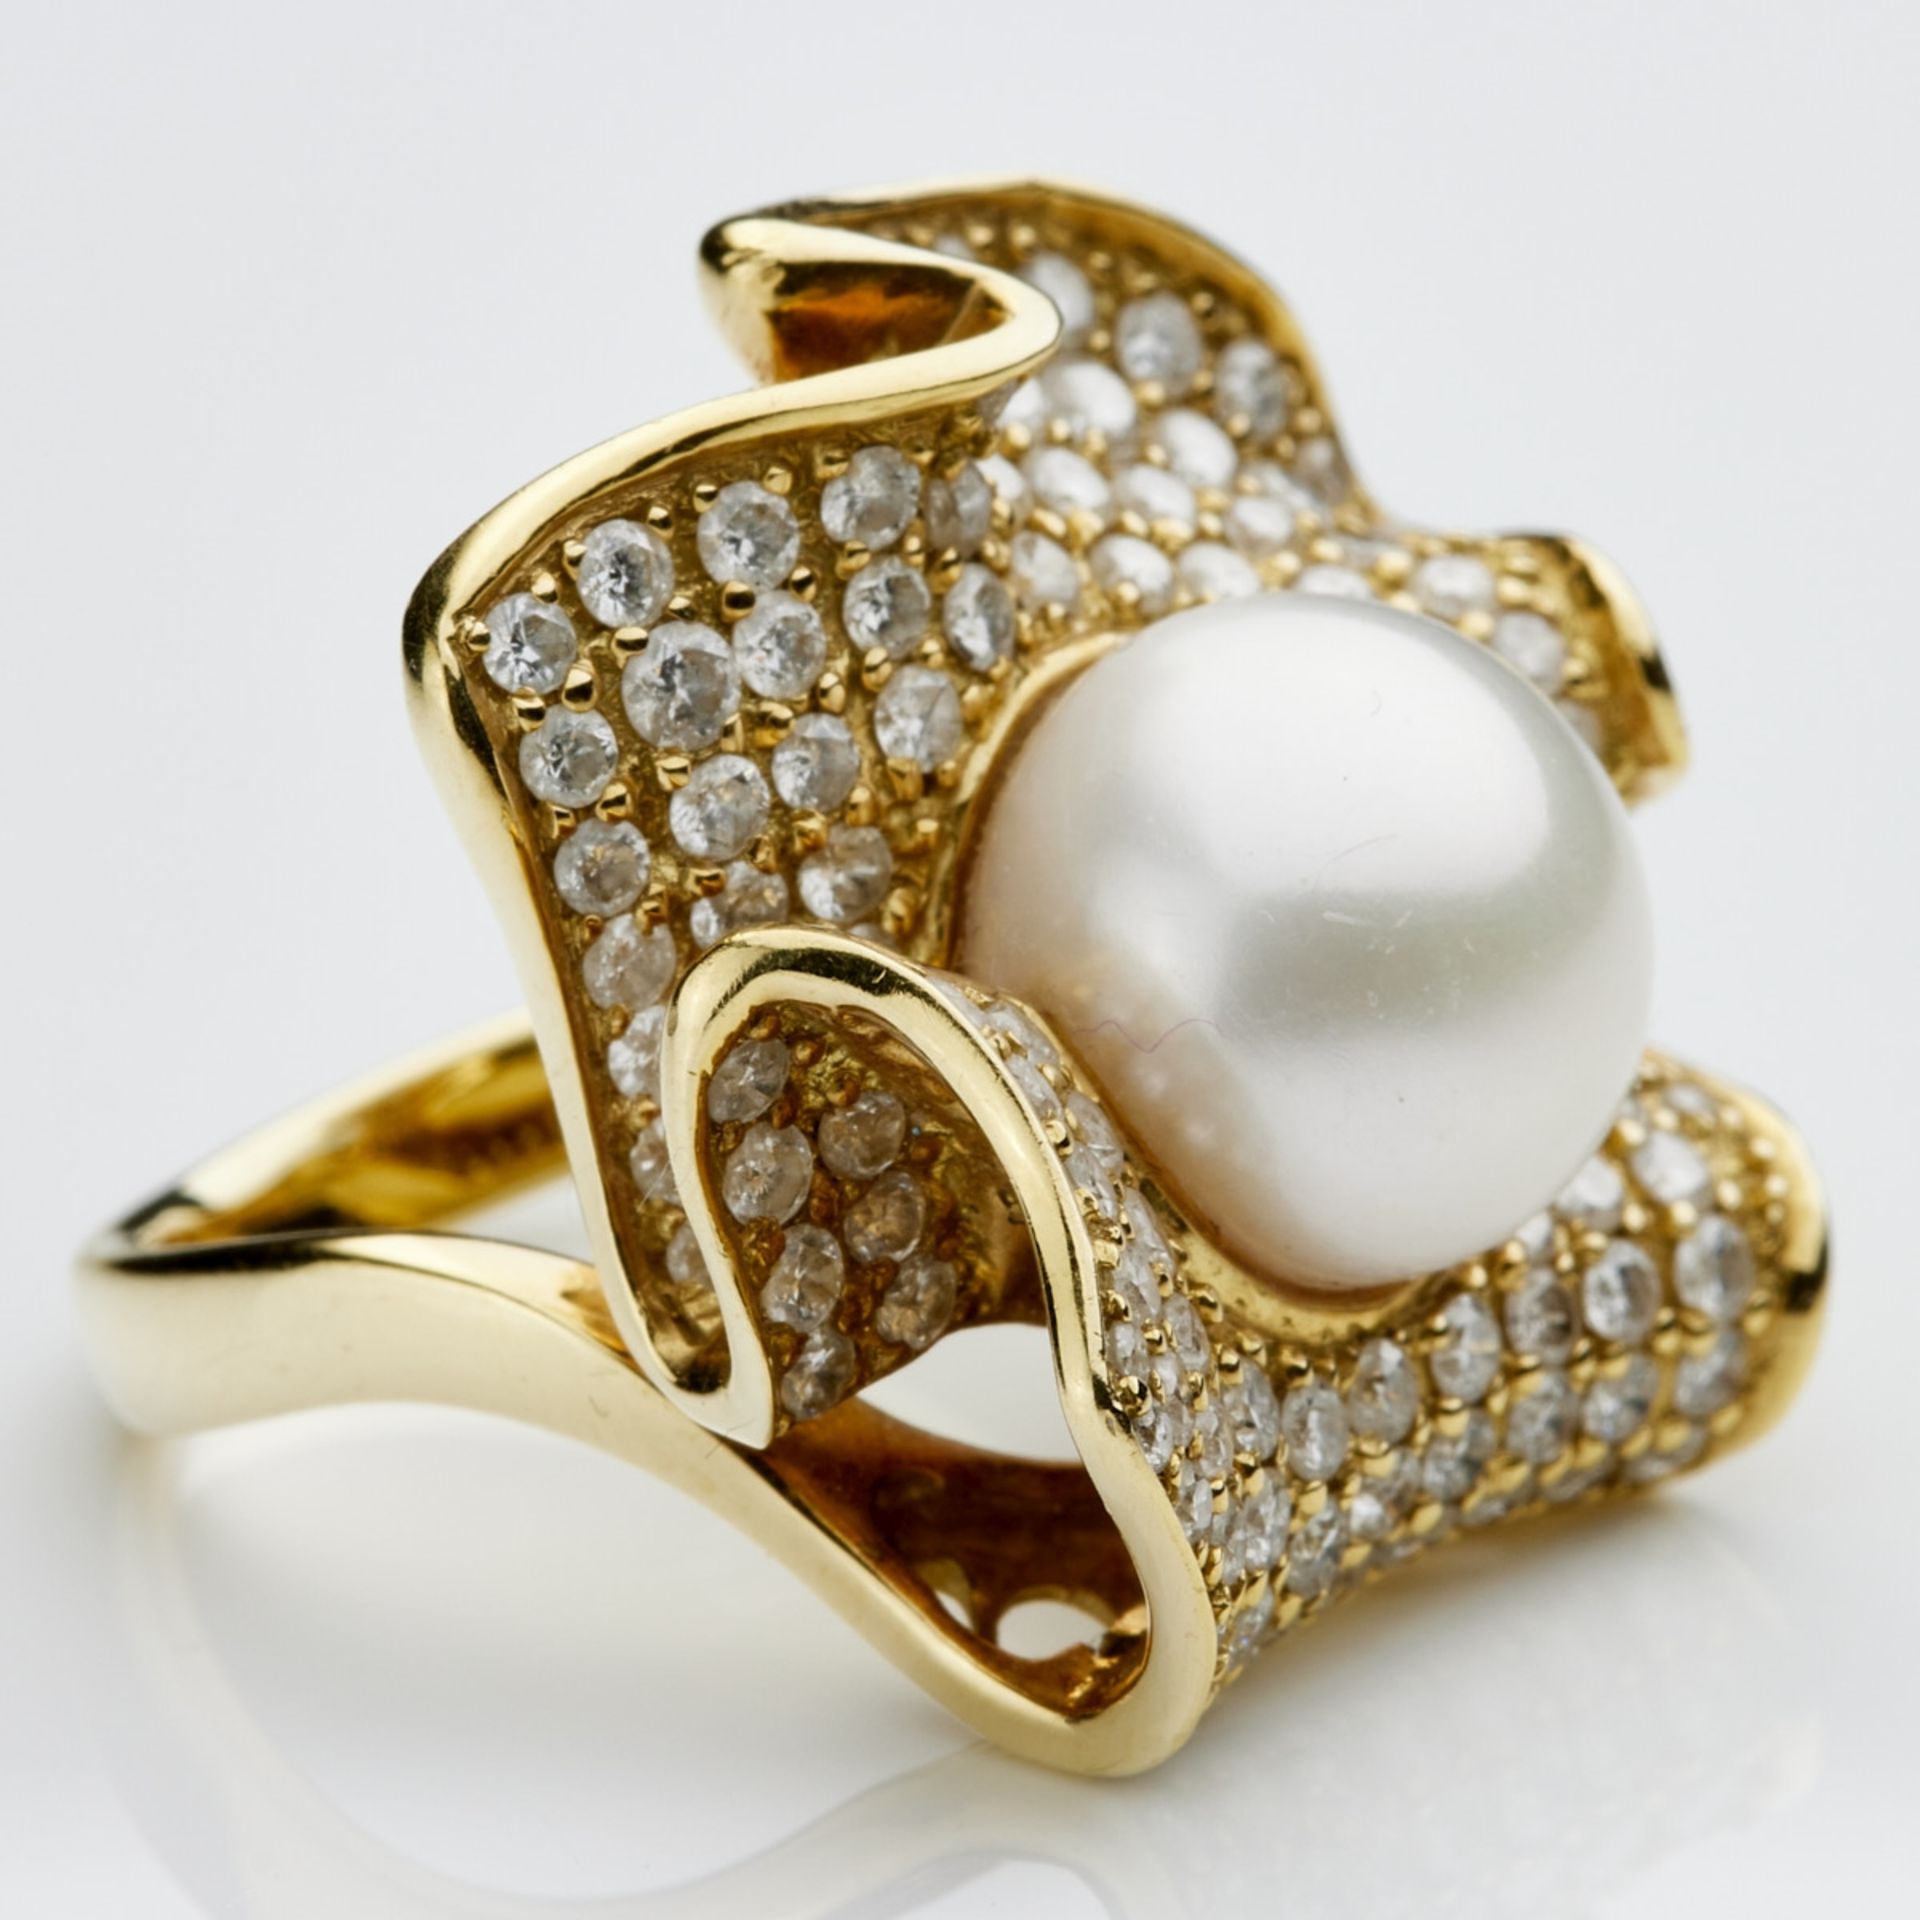 Blütenring mit Perle und Brillanten in Pavéfassung - - Bild 2 aus 2